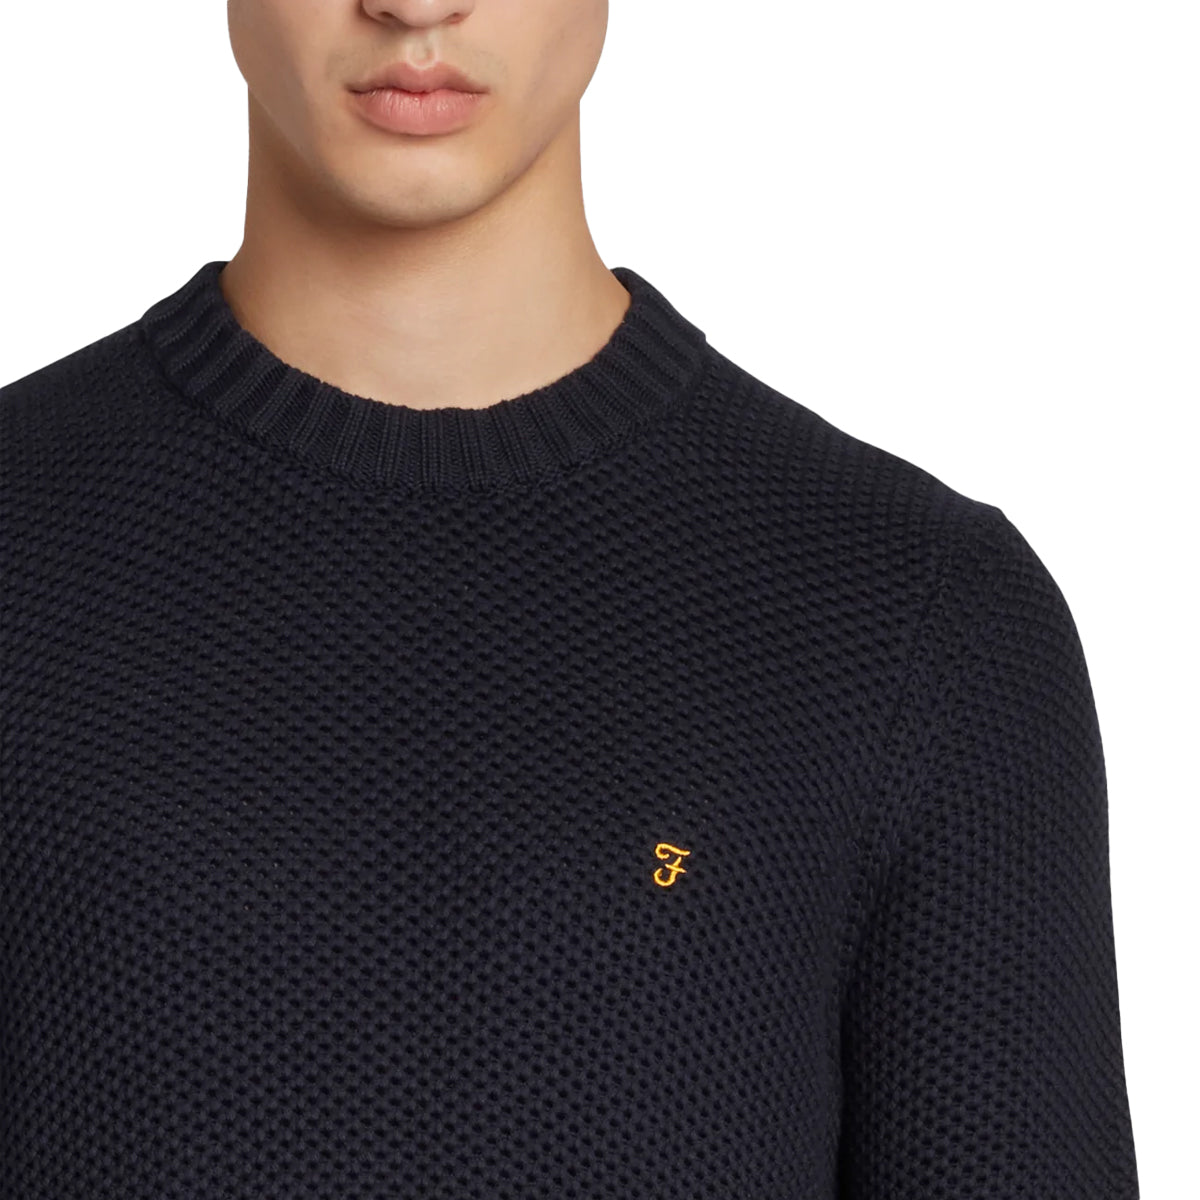 Farah Niseko Honeycomb Sweater - True Navy